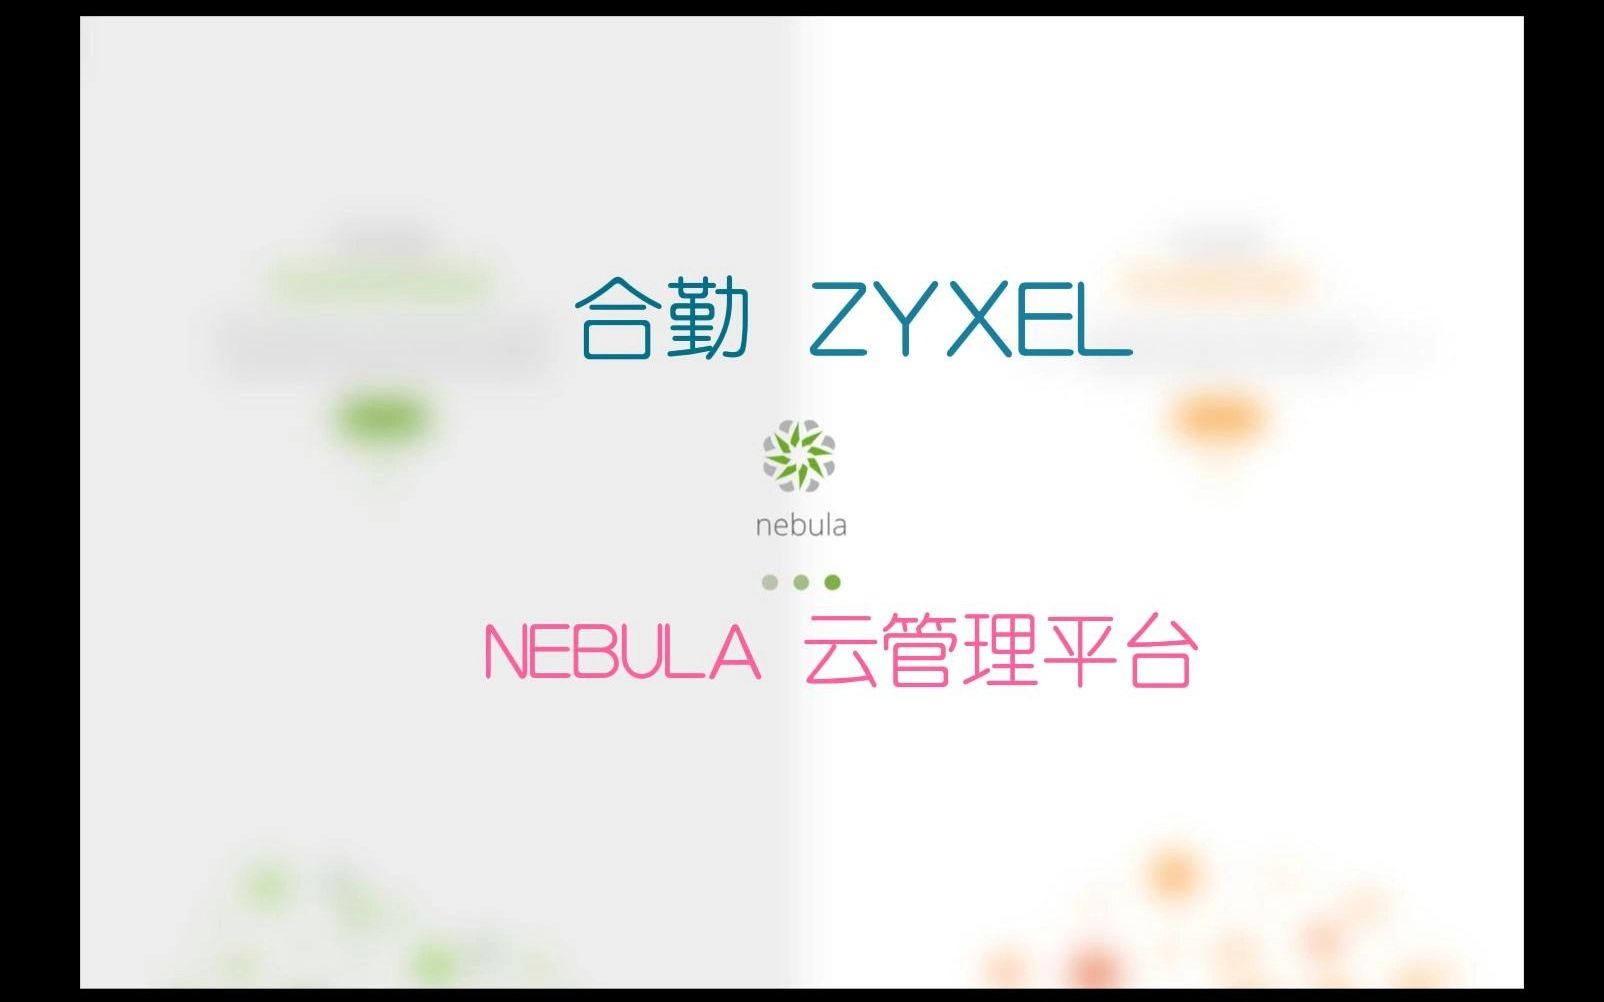 合勤ZYXEL智慧云管理平台Nebula官方宣传视频